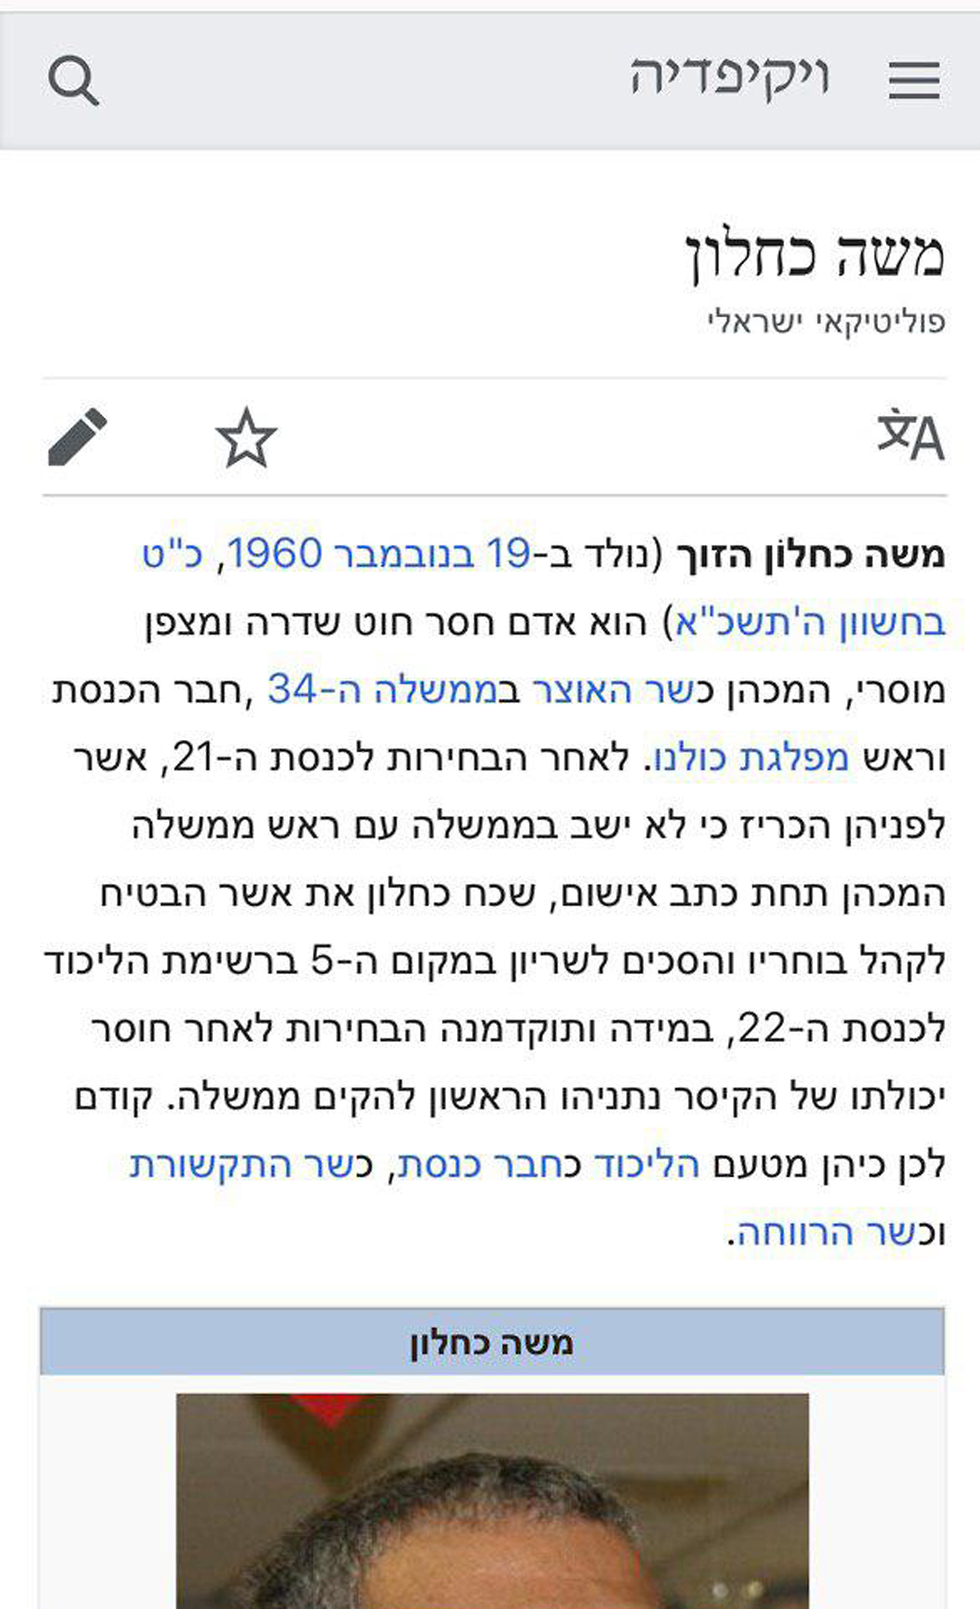 ערך הויקיפדיה של משה כחלון נערך לאחר ההודעה על איחוד עם הליכוד (מתוך ויקיפדיה)